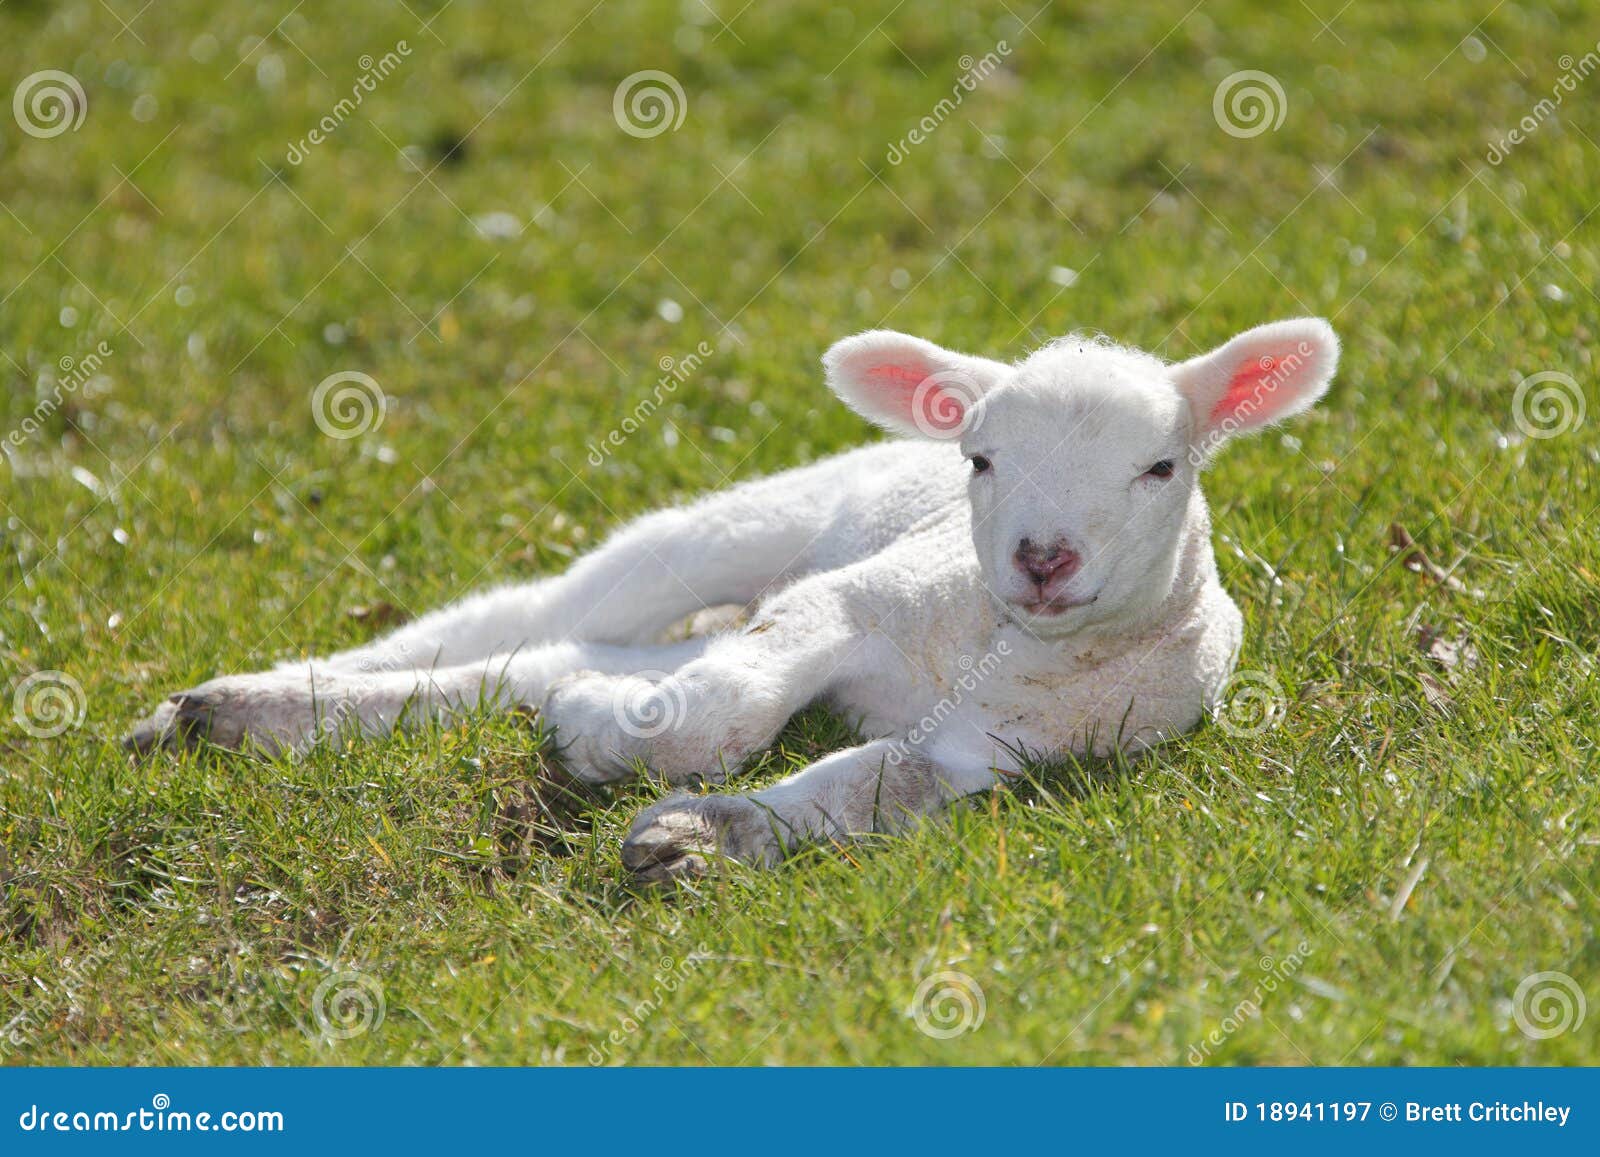 cute lamb